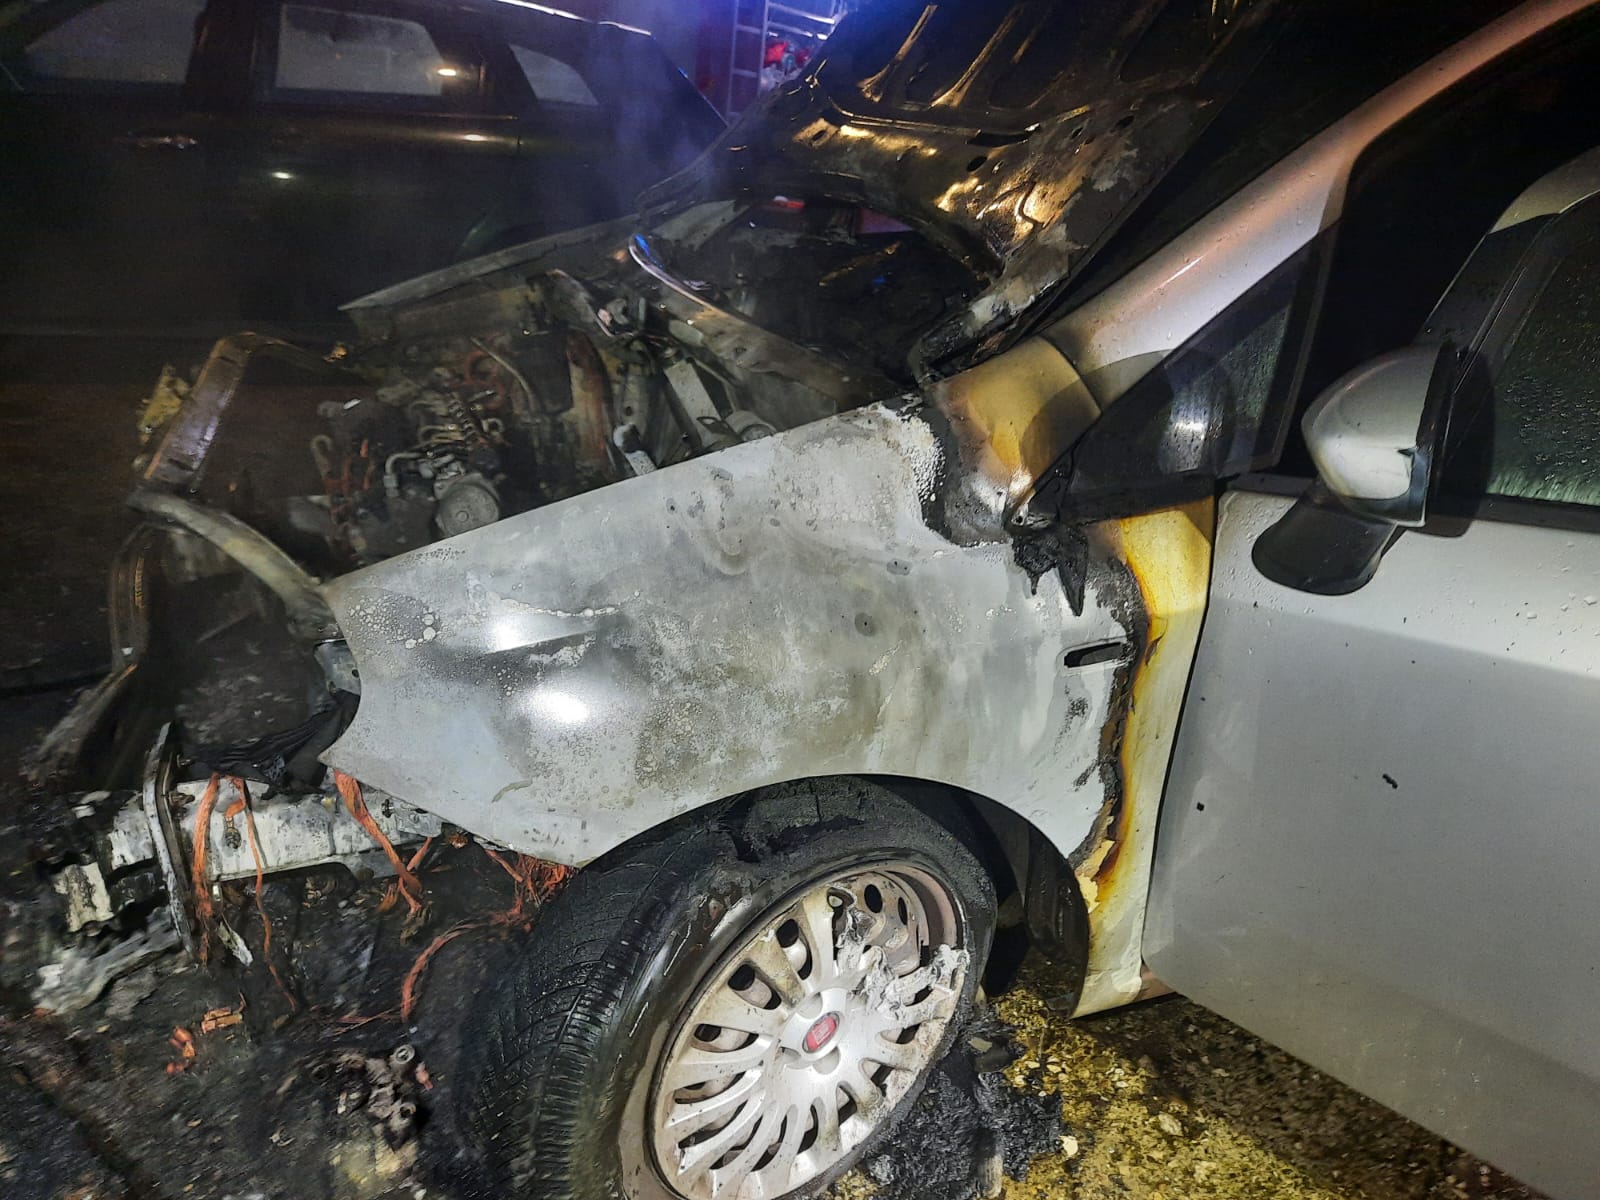 Auto in fiamme a Benevento, indagini in corso